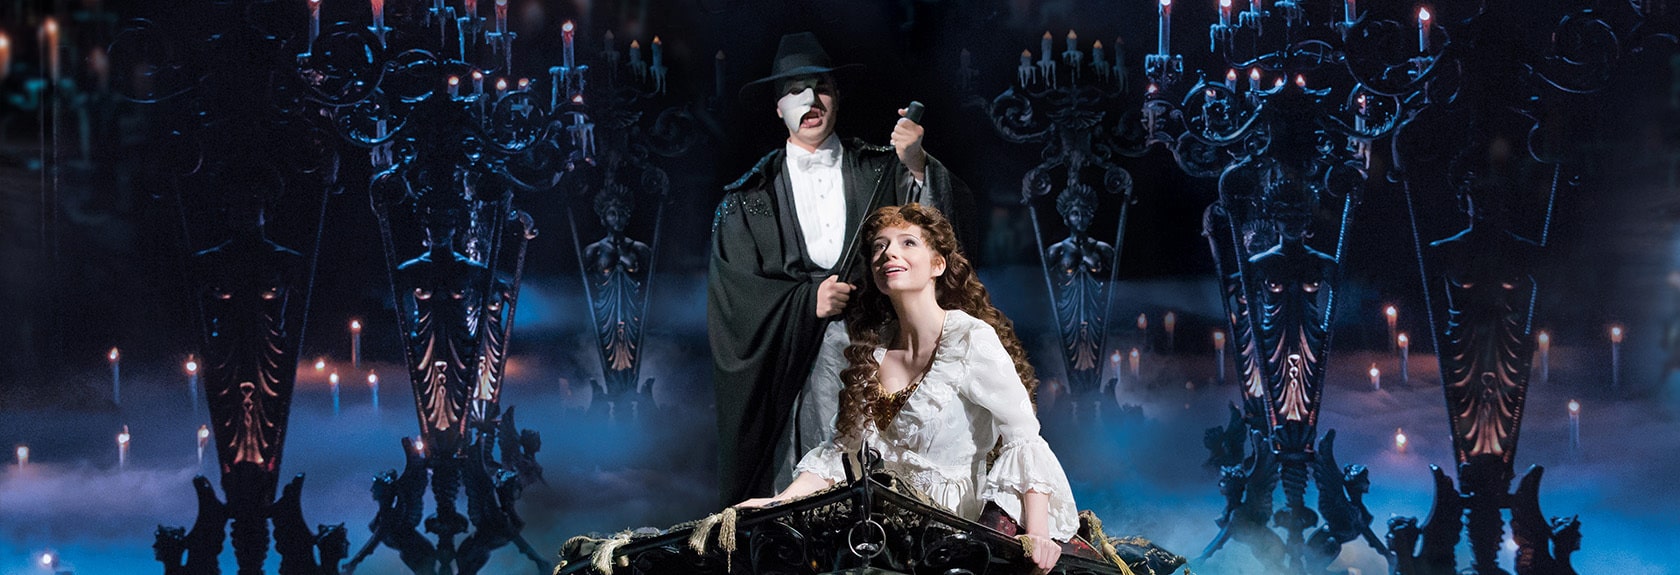 Você é louco por musical? Então va a um dos musicais mais antigos do mundo, The Phantom of the Opera de Londres